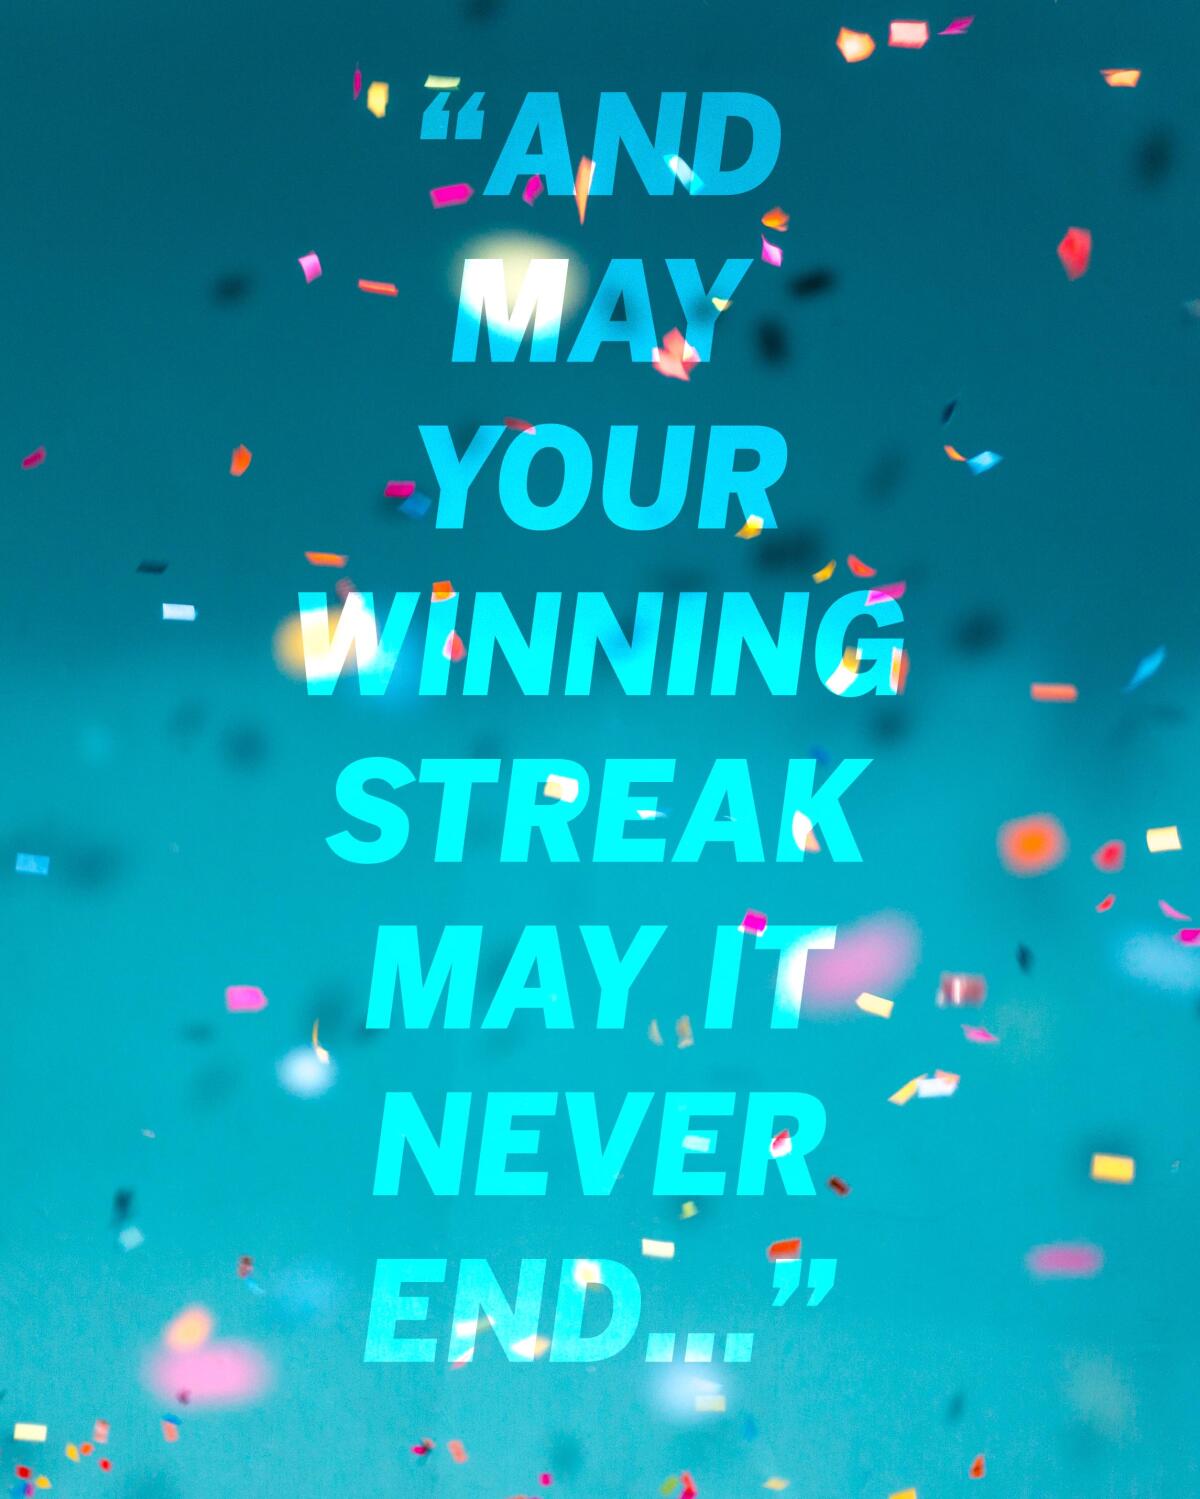 Listen to Glen Hansard's “Winning Streak” this week to help manifest some good luck.